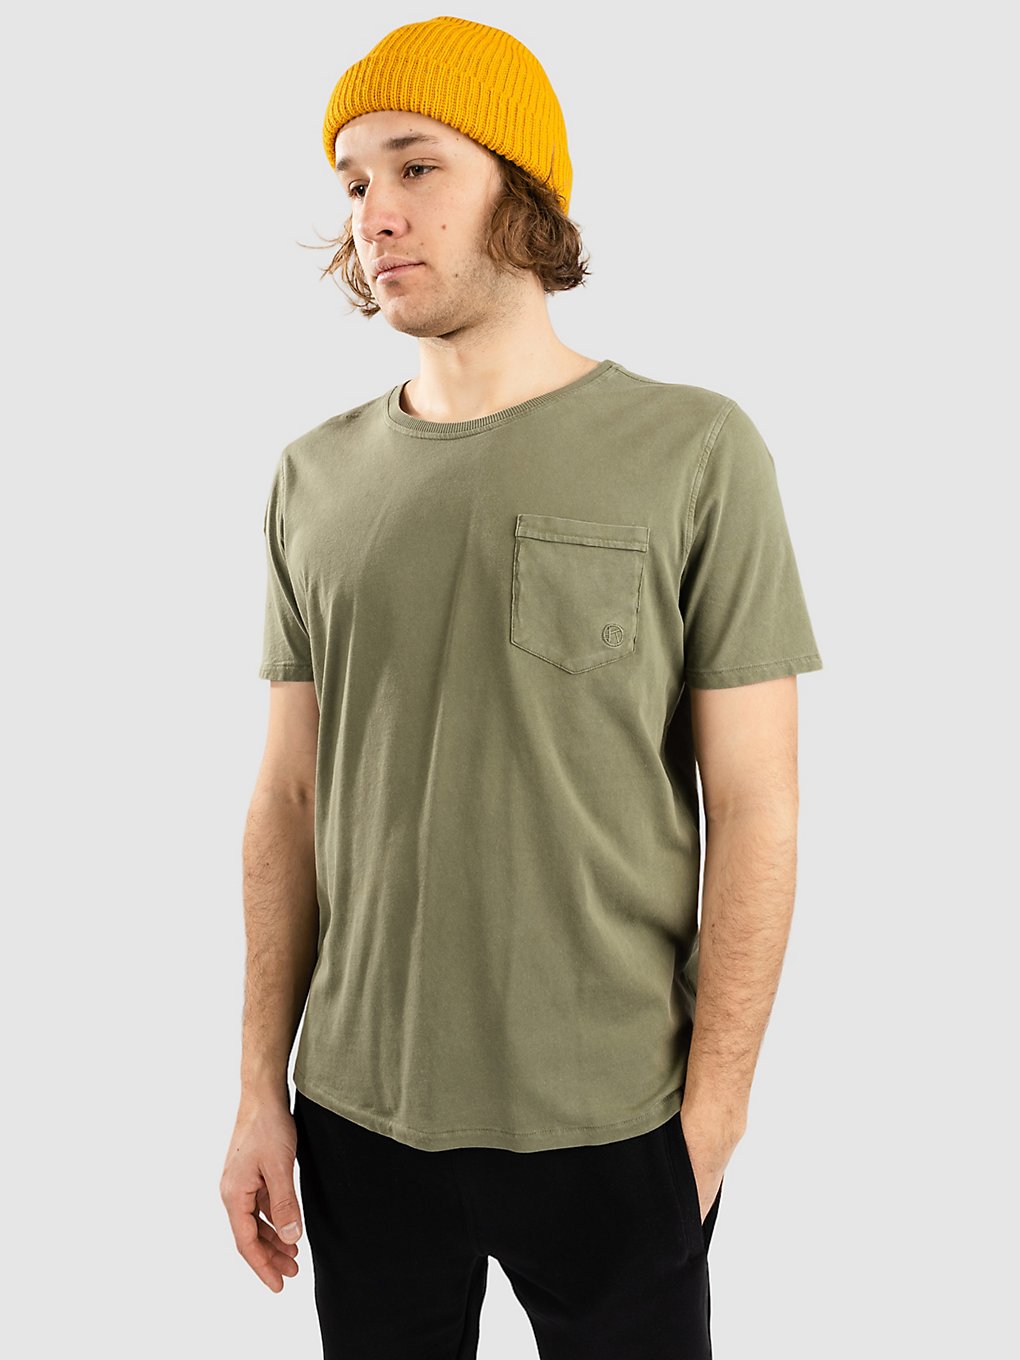 Kazane Benito T-Shirt grap leaf kaufen